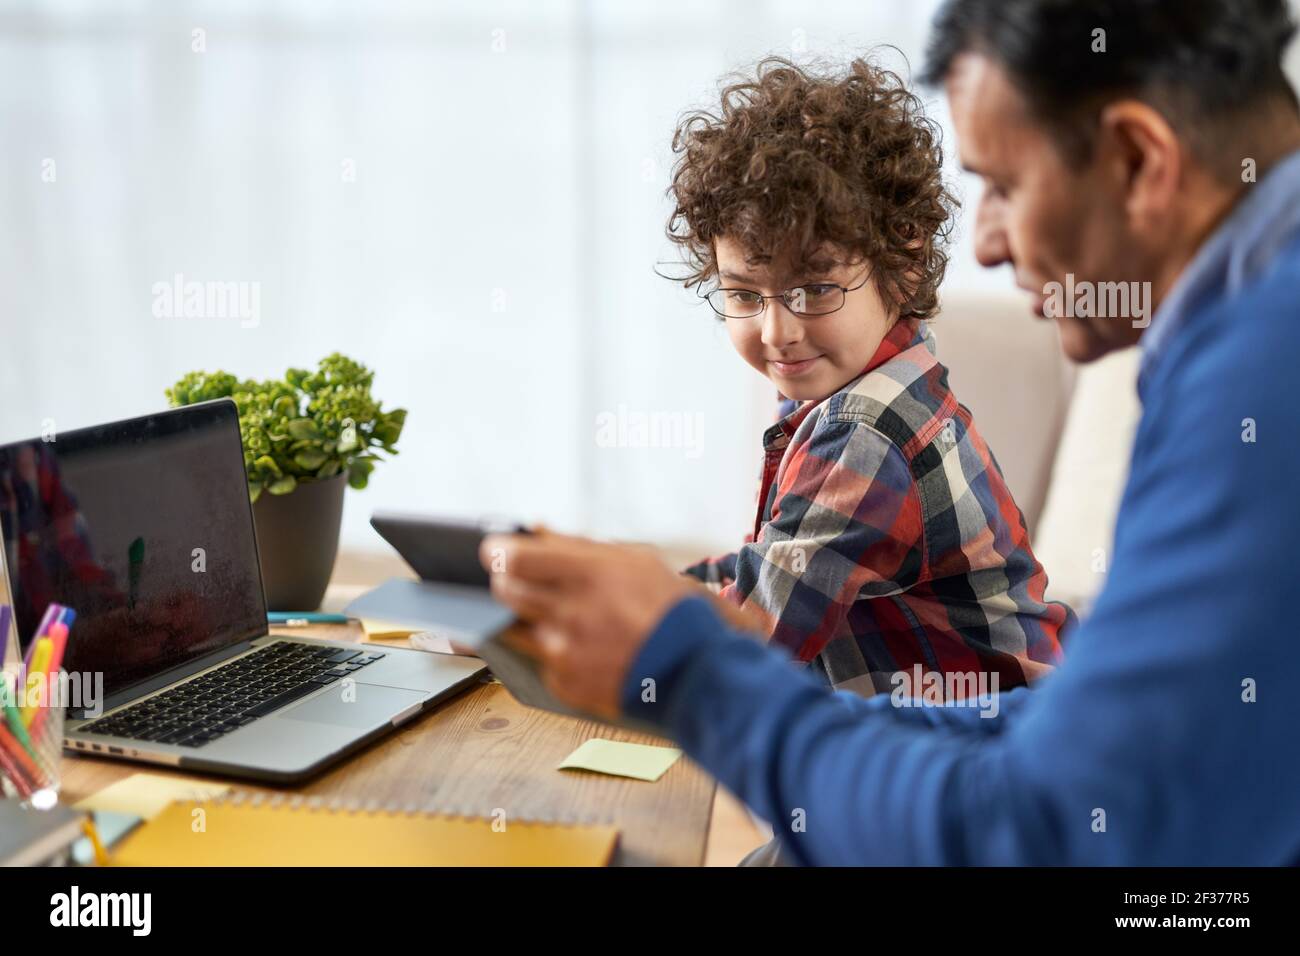 Lehrkind. Porträt des niedlichen kleinen hispanischen Schuljungen, der zusammen mit seinem Vater Hausaufgaben macht und Technologie verwendet, während er zu Hause am Schreibtisch sitzt Stockfoto